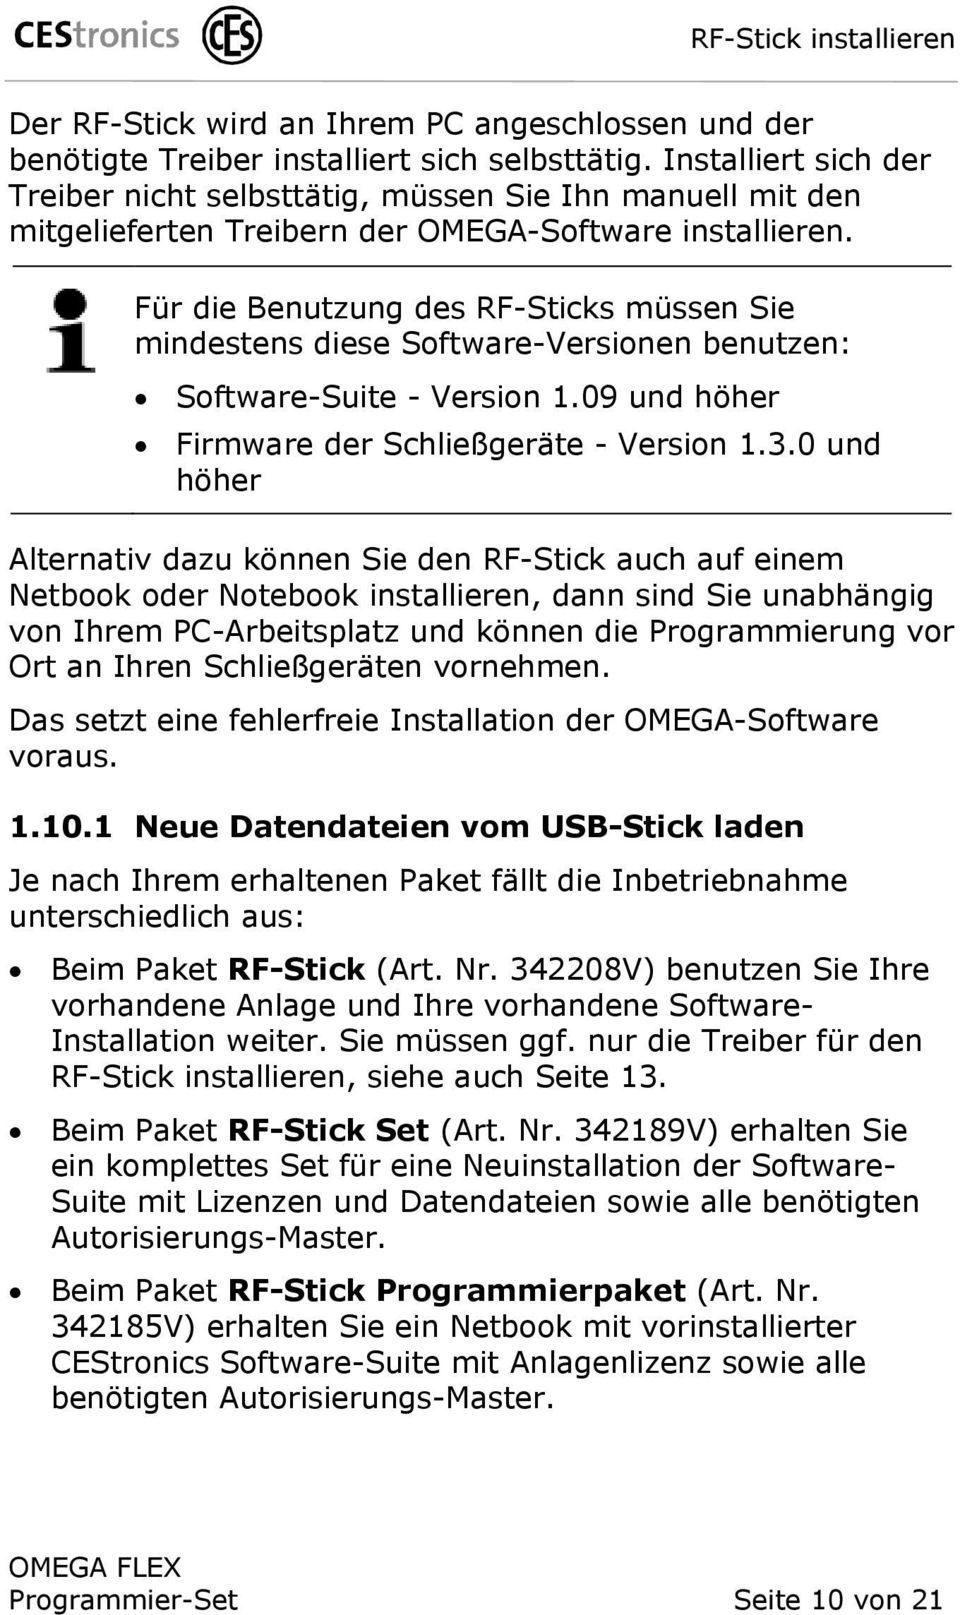 Für die Benutzung des RF-Sticks müssen Sie mindestens diese Software-Versionen benutzen: Software-Suite - Version 1.09 und höher Firmware der Schließgeräte - Version 1.3.